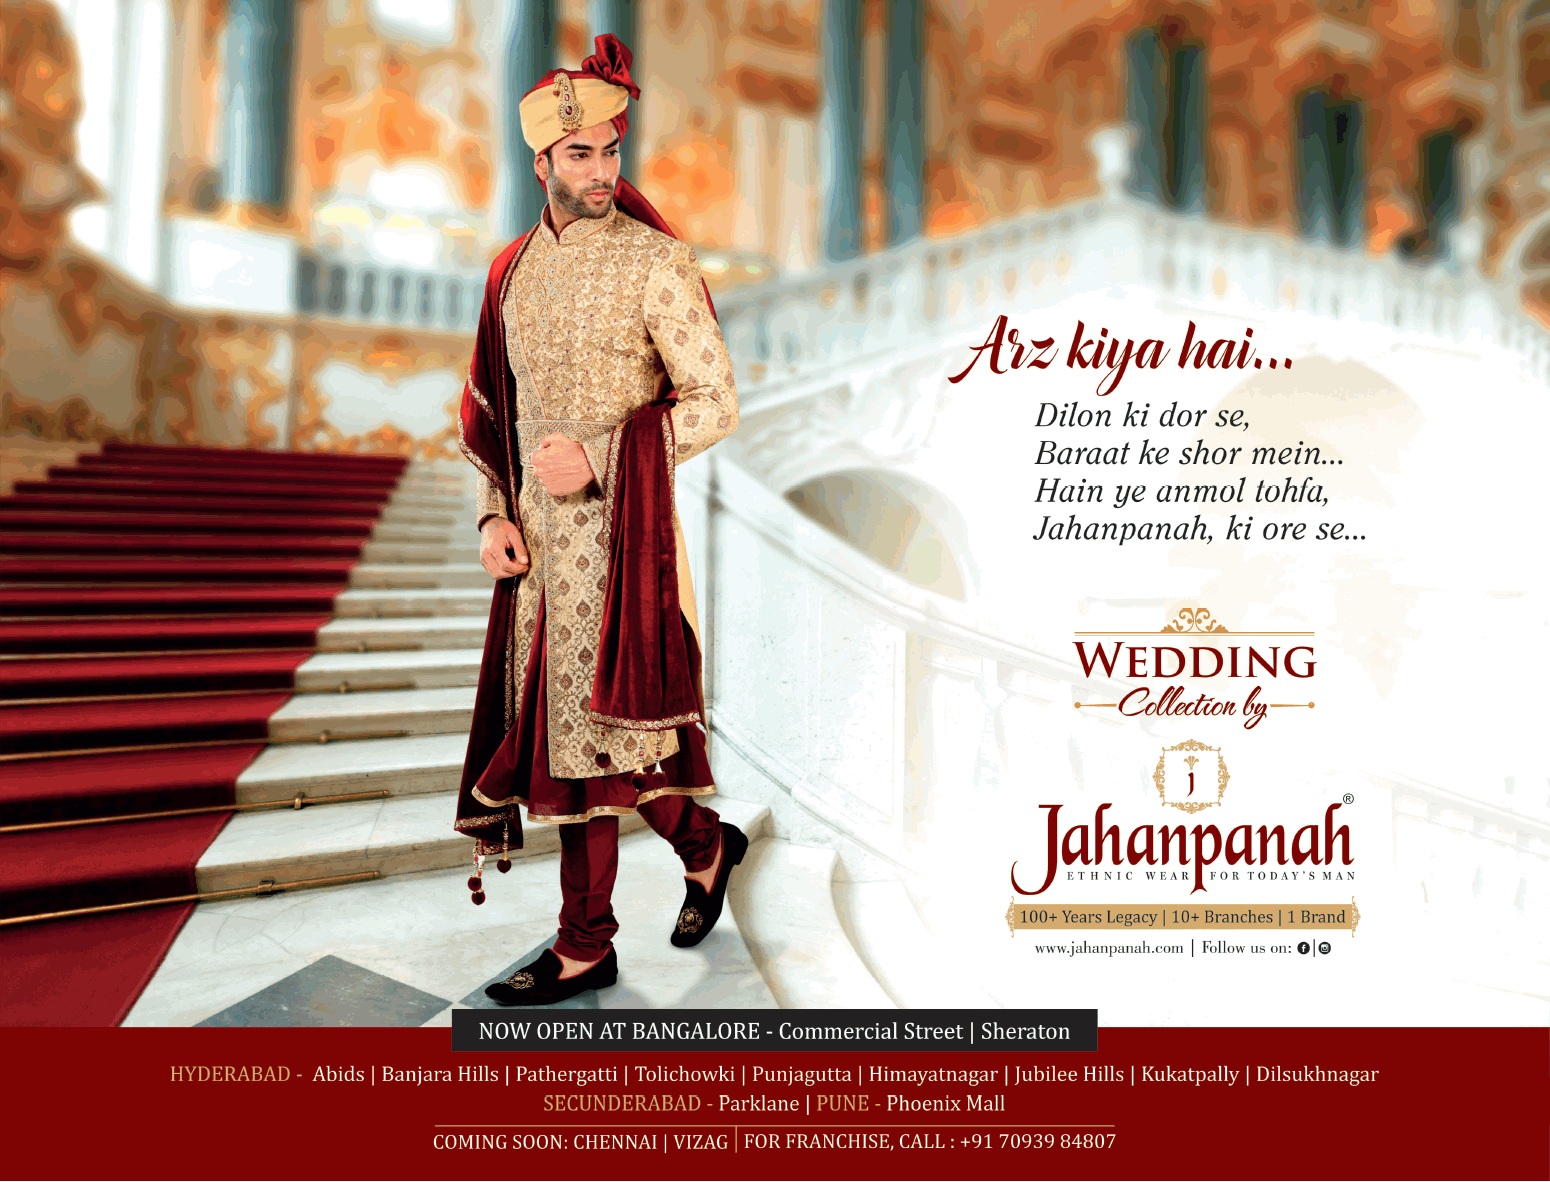 jahapanah-wedding-collection-arz-kiya-hai-ad-times-of-india-hyderabad-27-01-2019.png